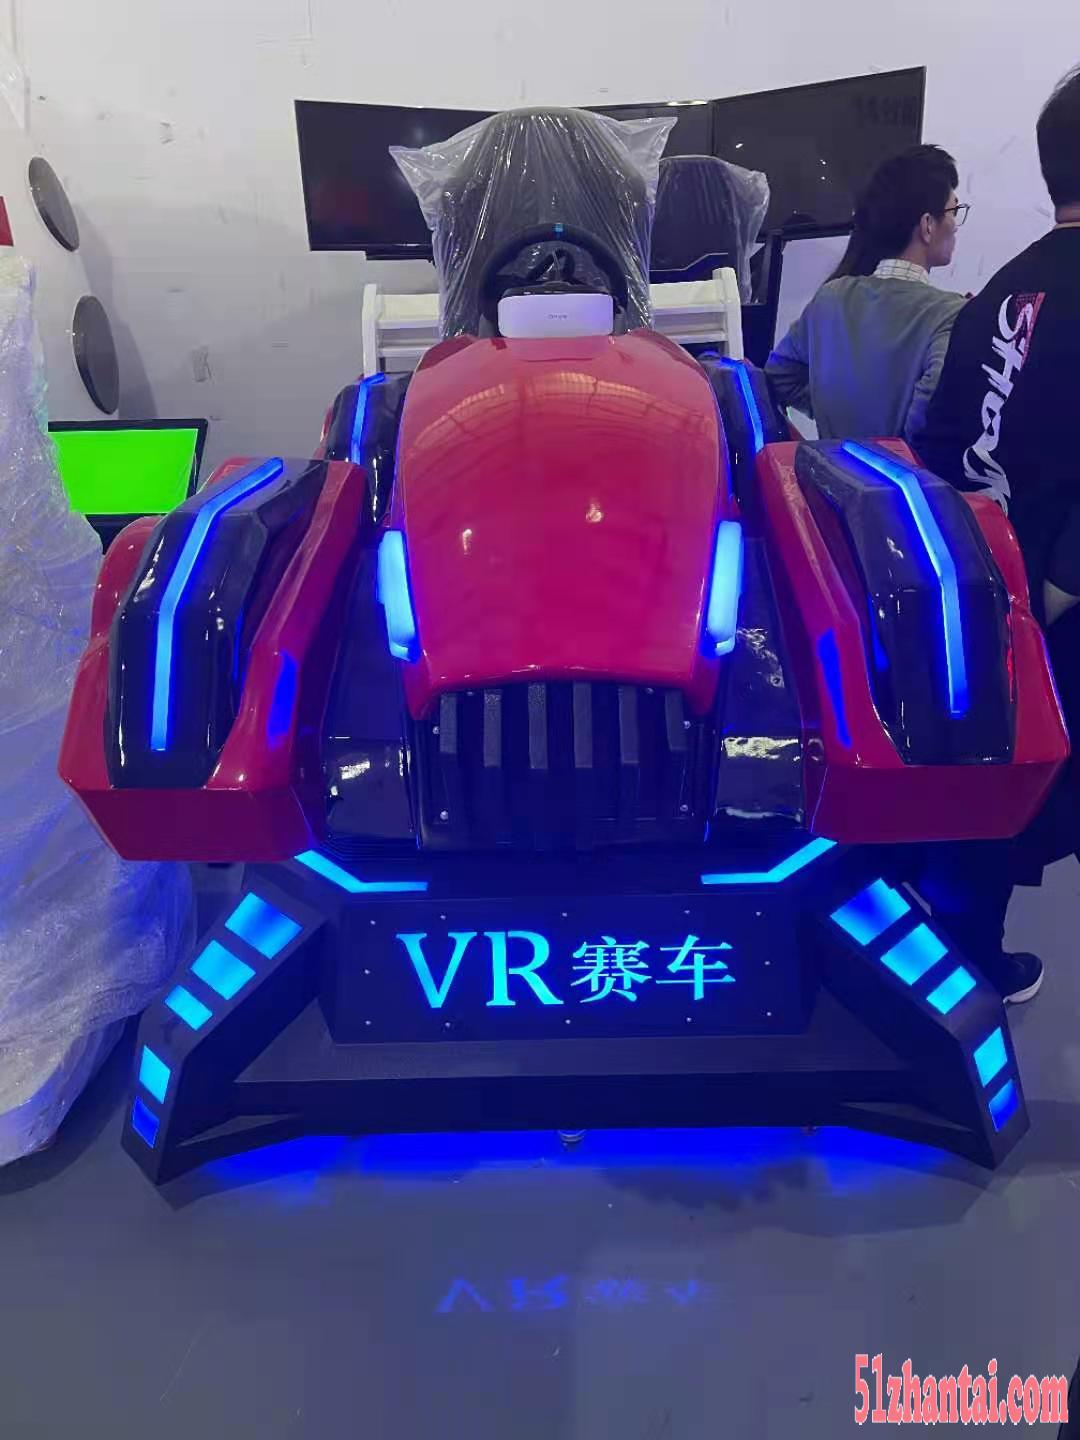 VR设备出租 VR赛车 VR战车 VR天地行等设备出租租赁-图1